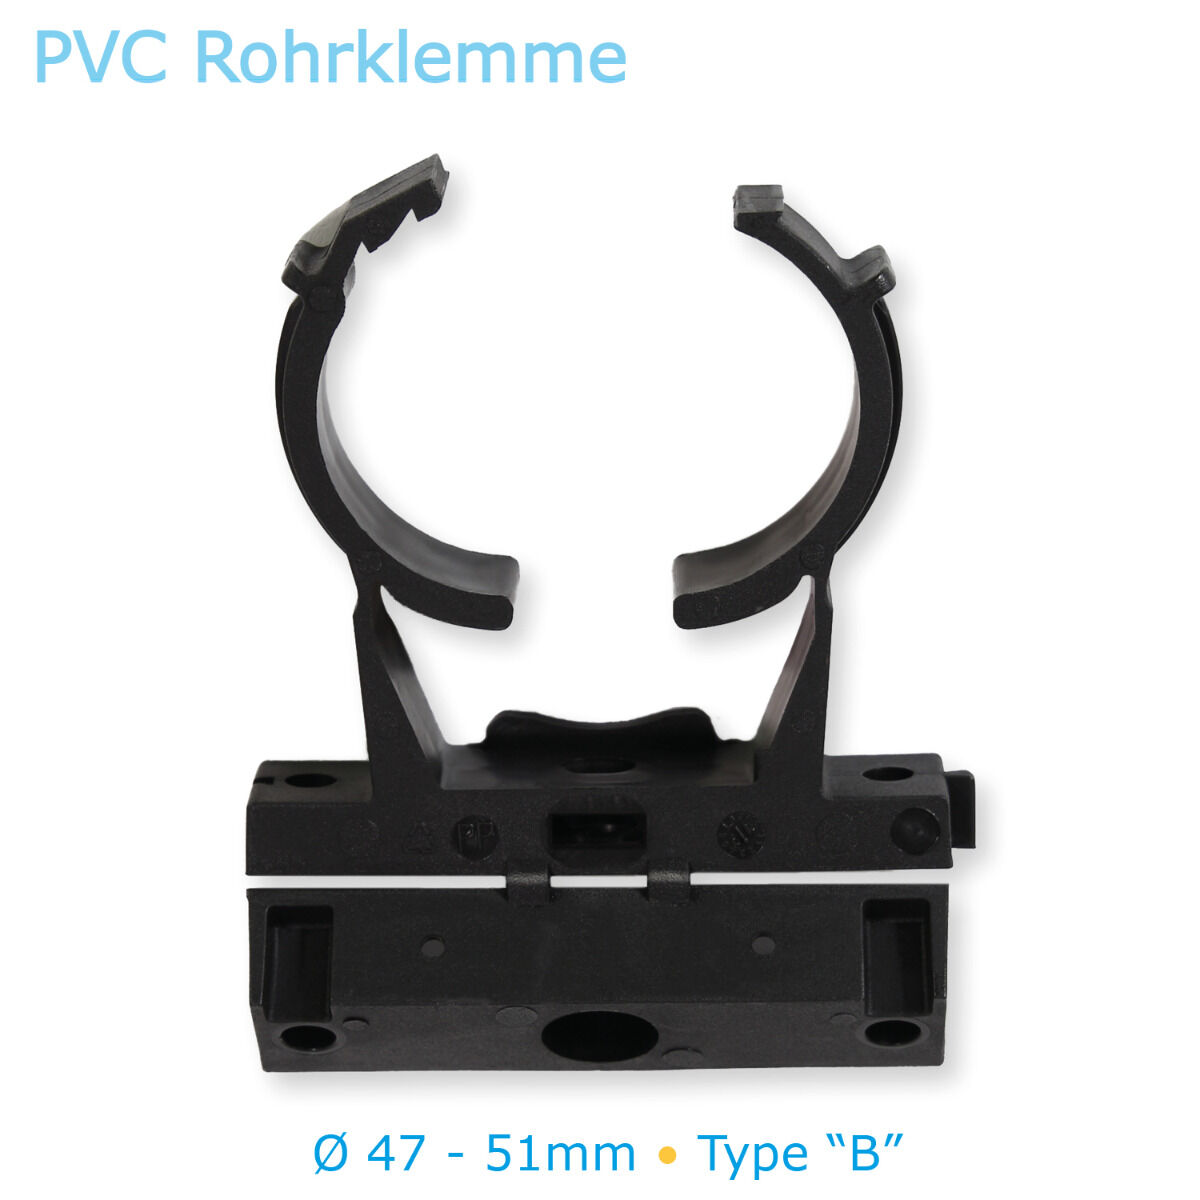 PVC Rohrklemme Typ B für metrisches und zölliges Rohr Ø 47mm - 51mm